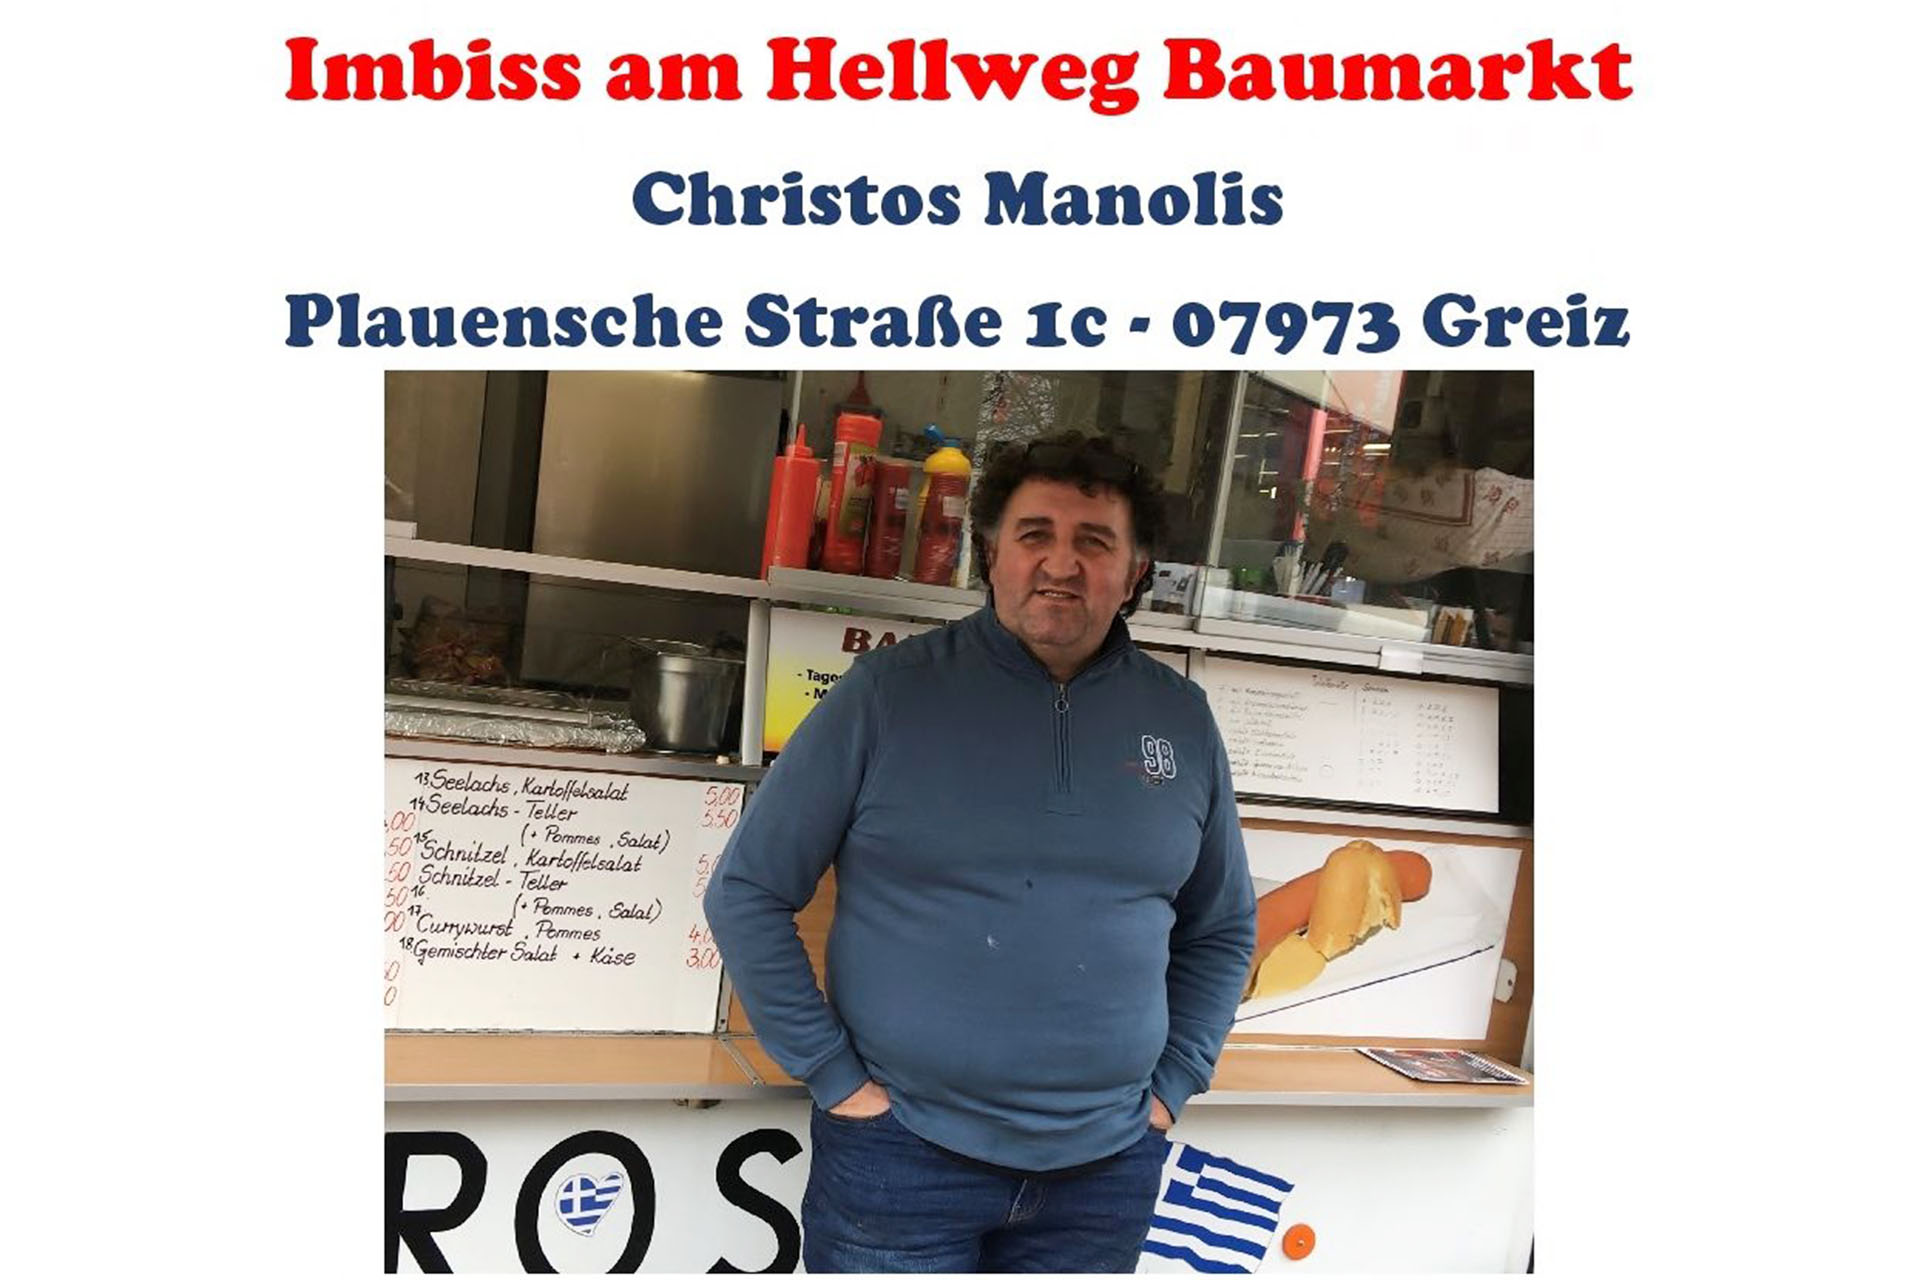 Christos Manolis - Inhaber des Imbiss am Hellweg Baumarkt in Greiz - unterstützt nun unsere Vereinsarbeit.